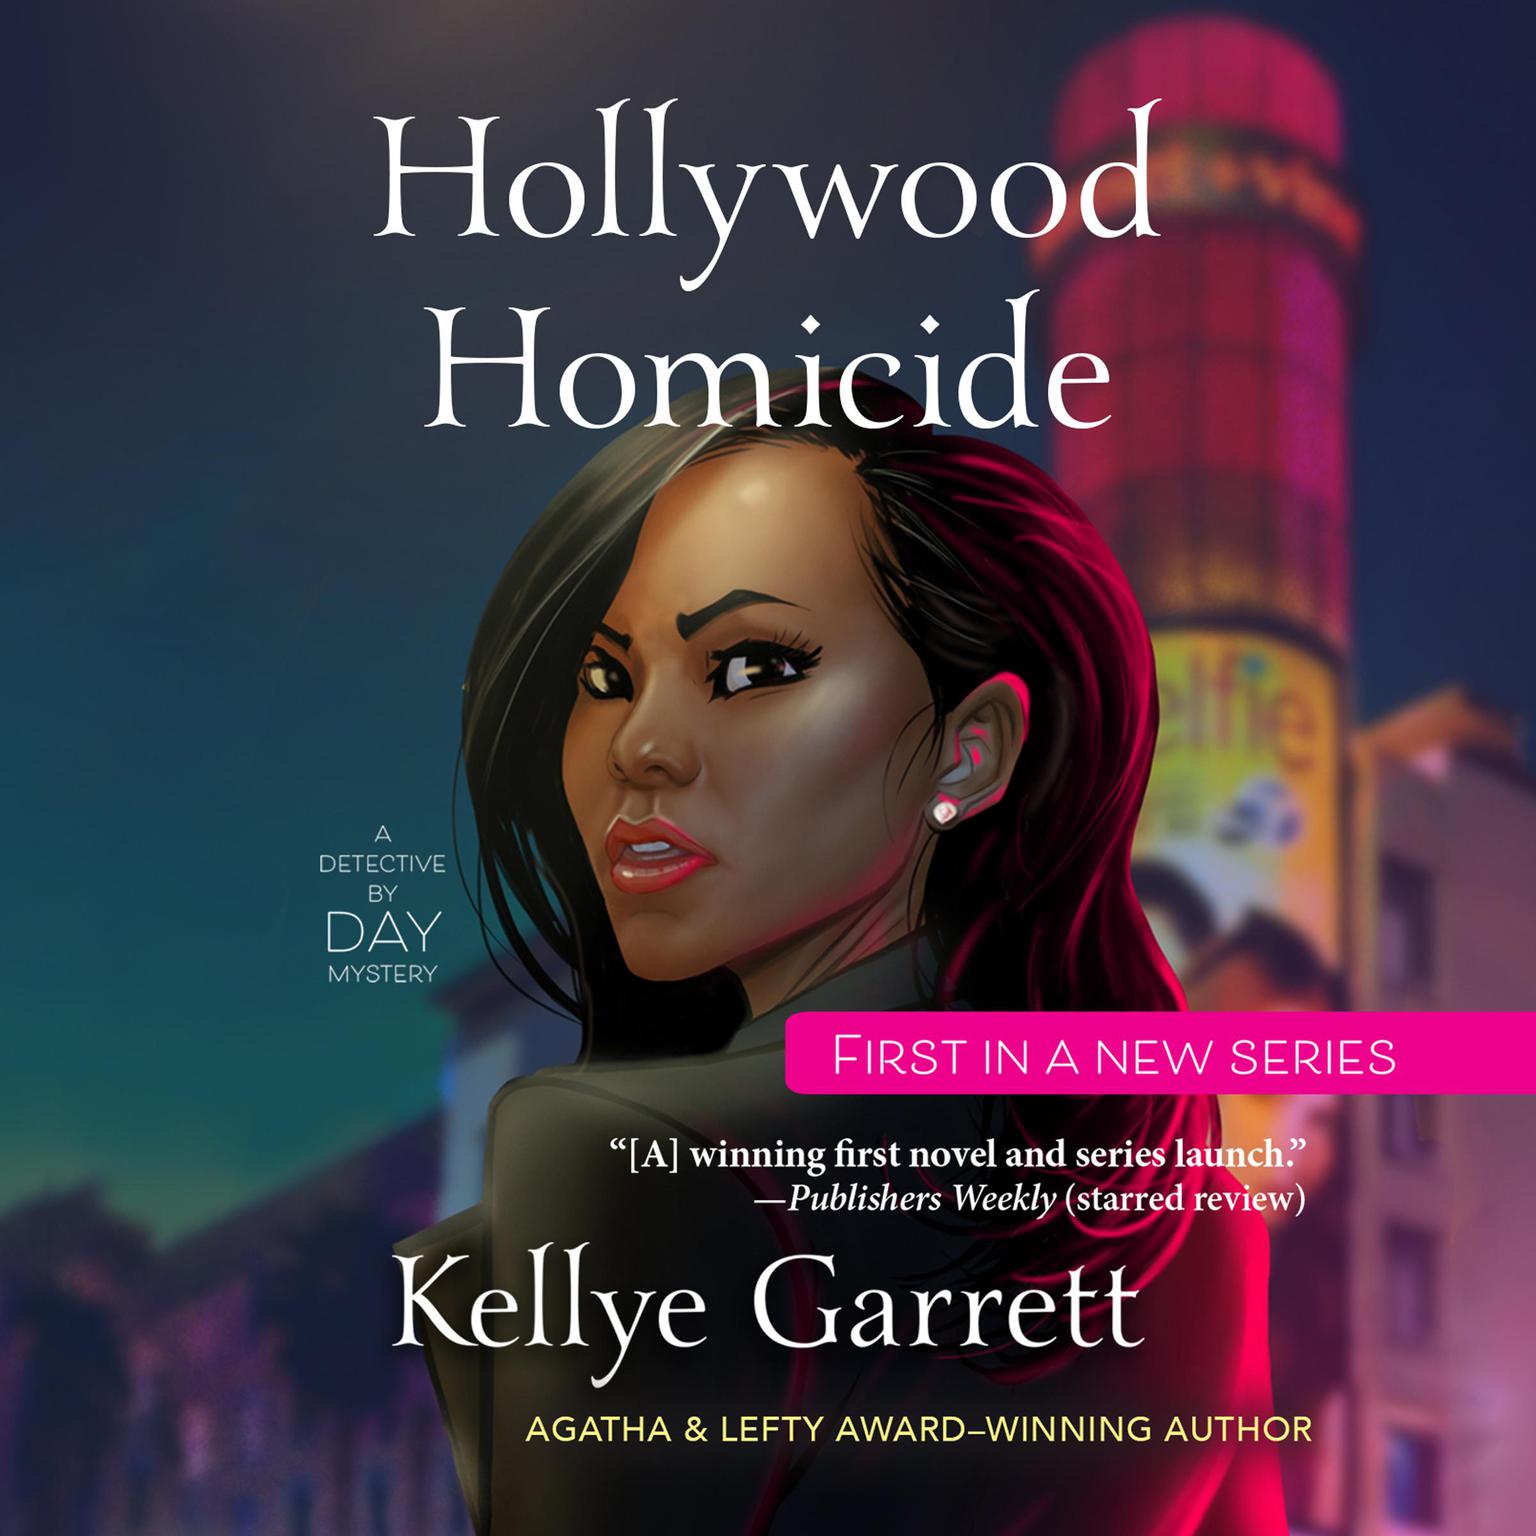 Hollywood Homicide Audiobook, by Kellye Garrett